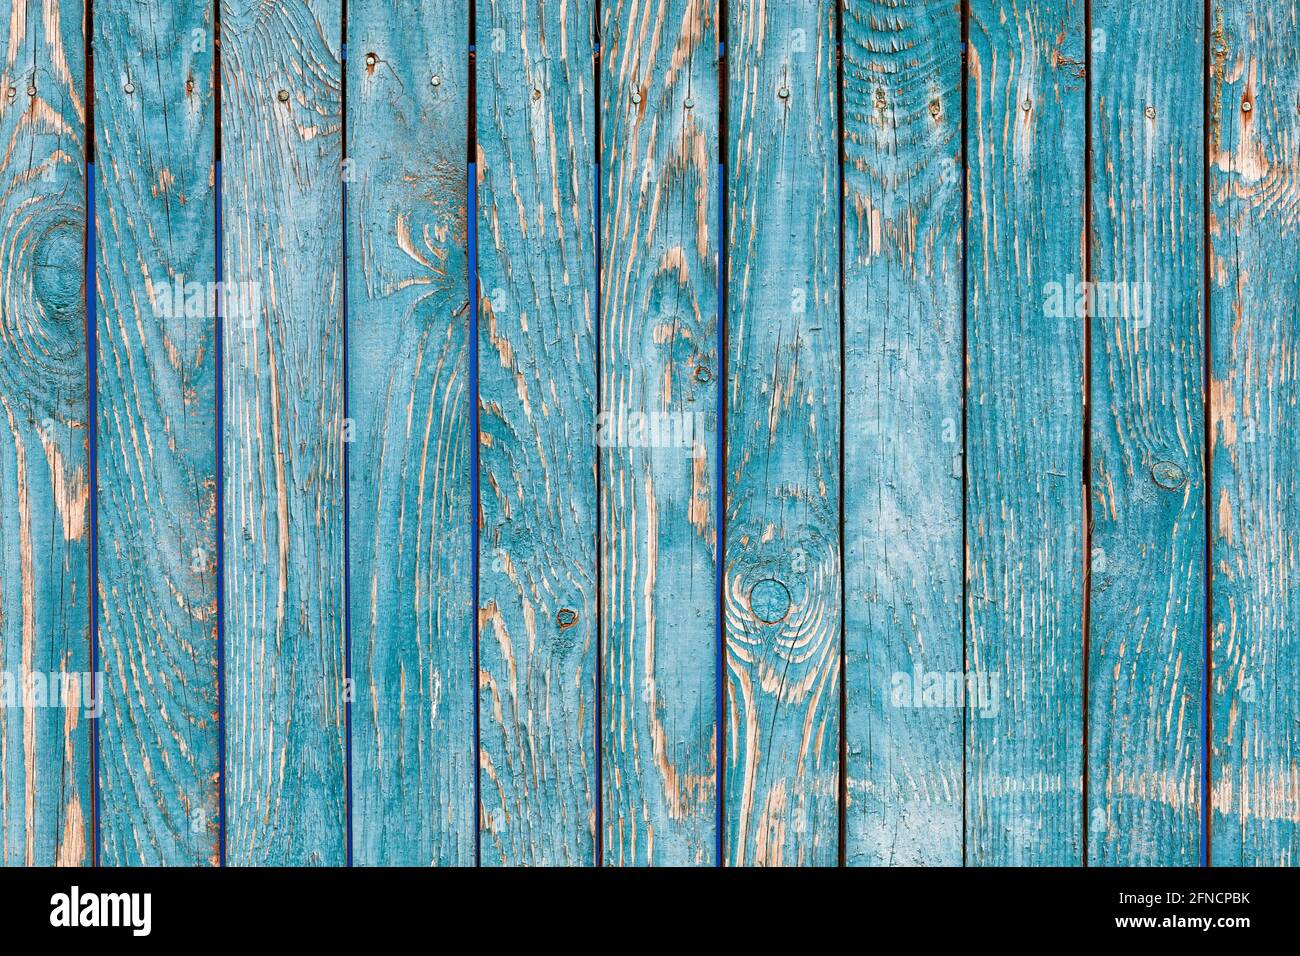 Ein blau-grüner Holzzaun mit einer ausgeprägten knottigen Textur und einer rauen Oberfläche mit rissiger blau-grüner Farbe. Eine hohe Auflösung. Stockfoto